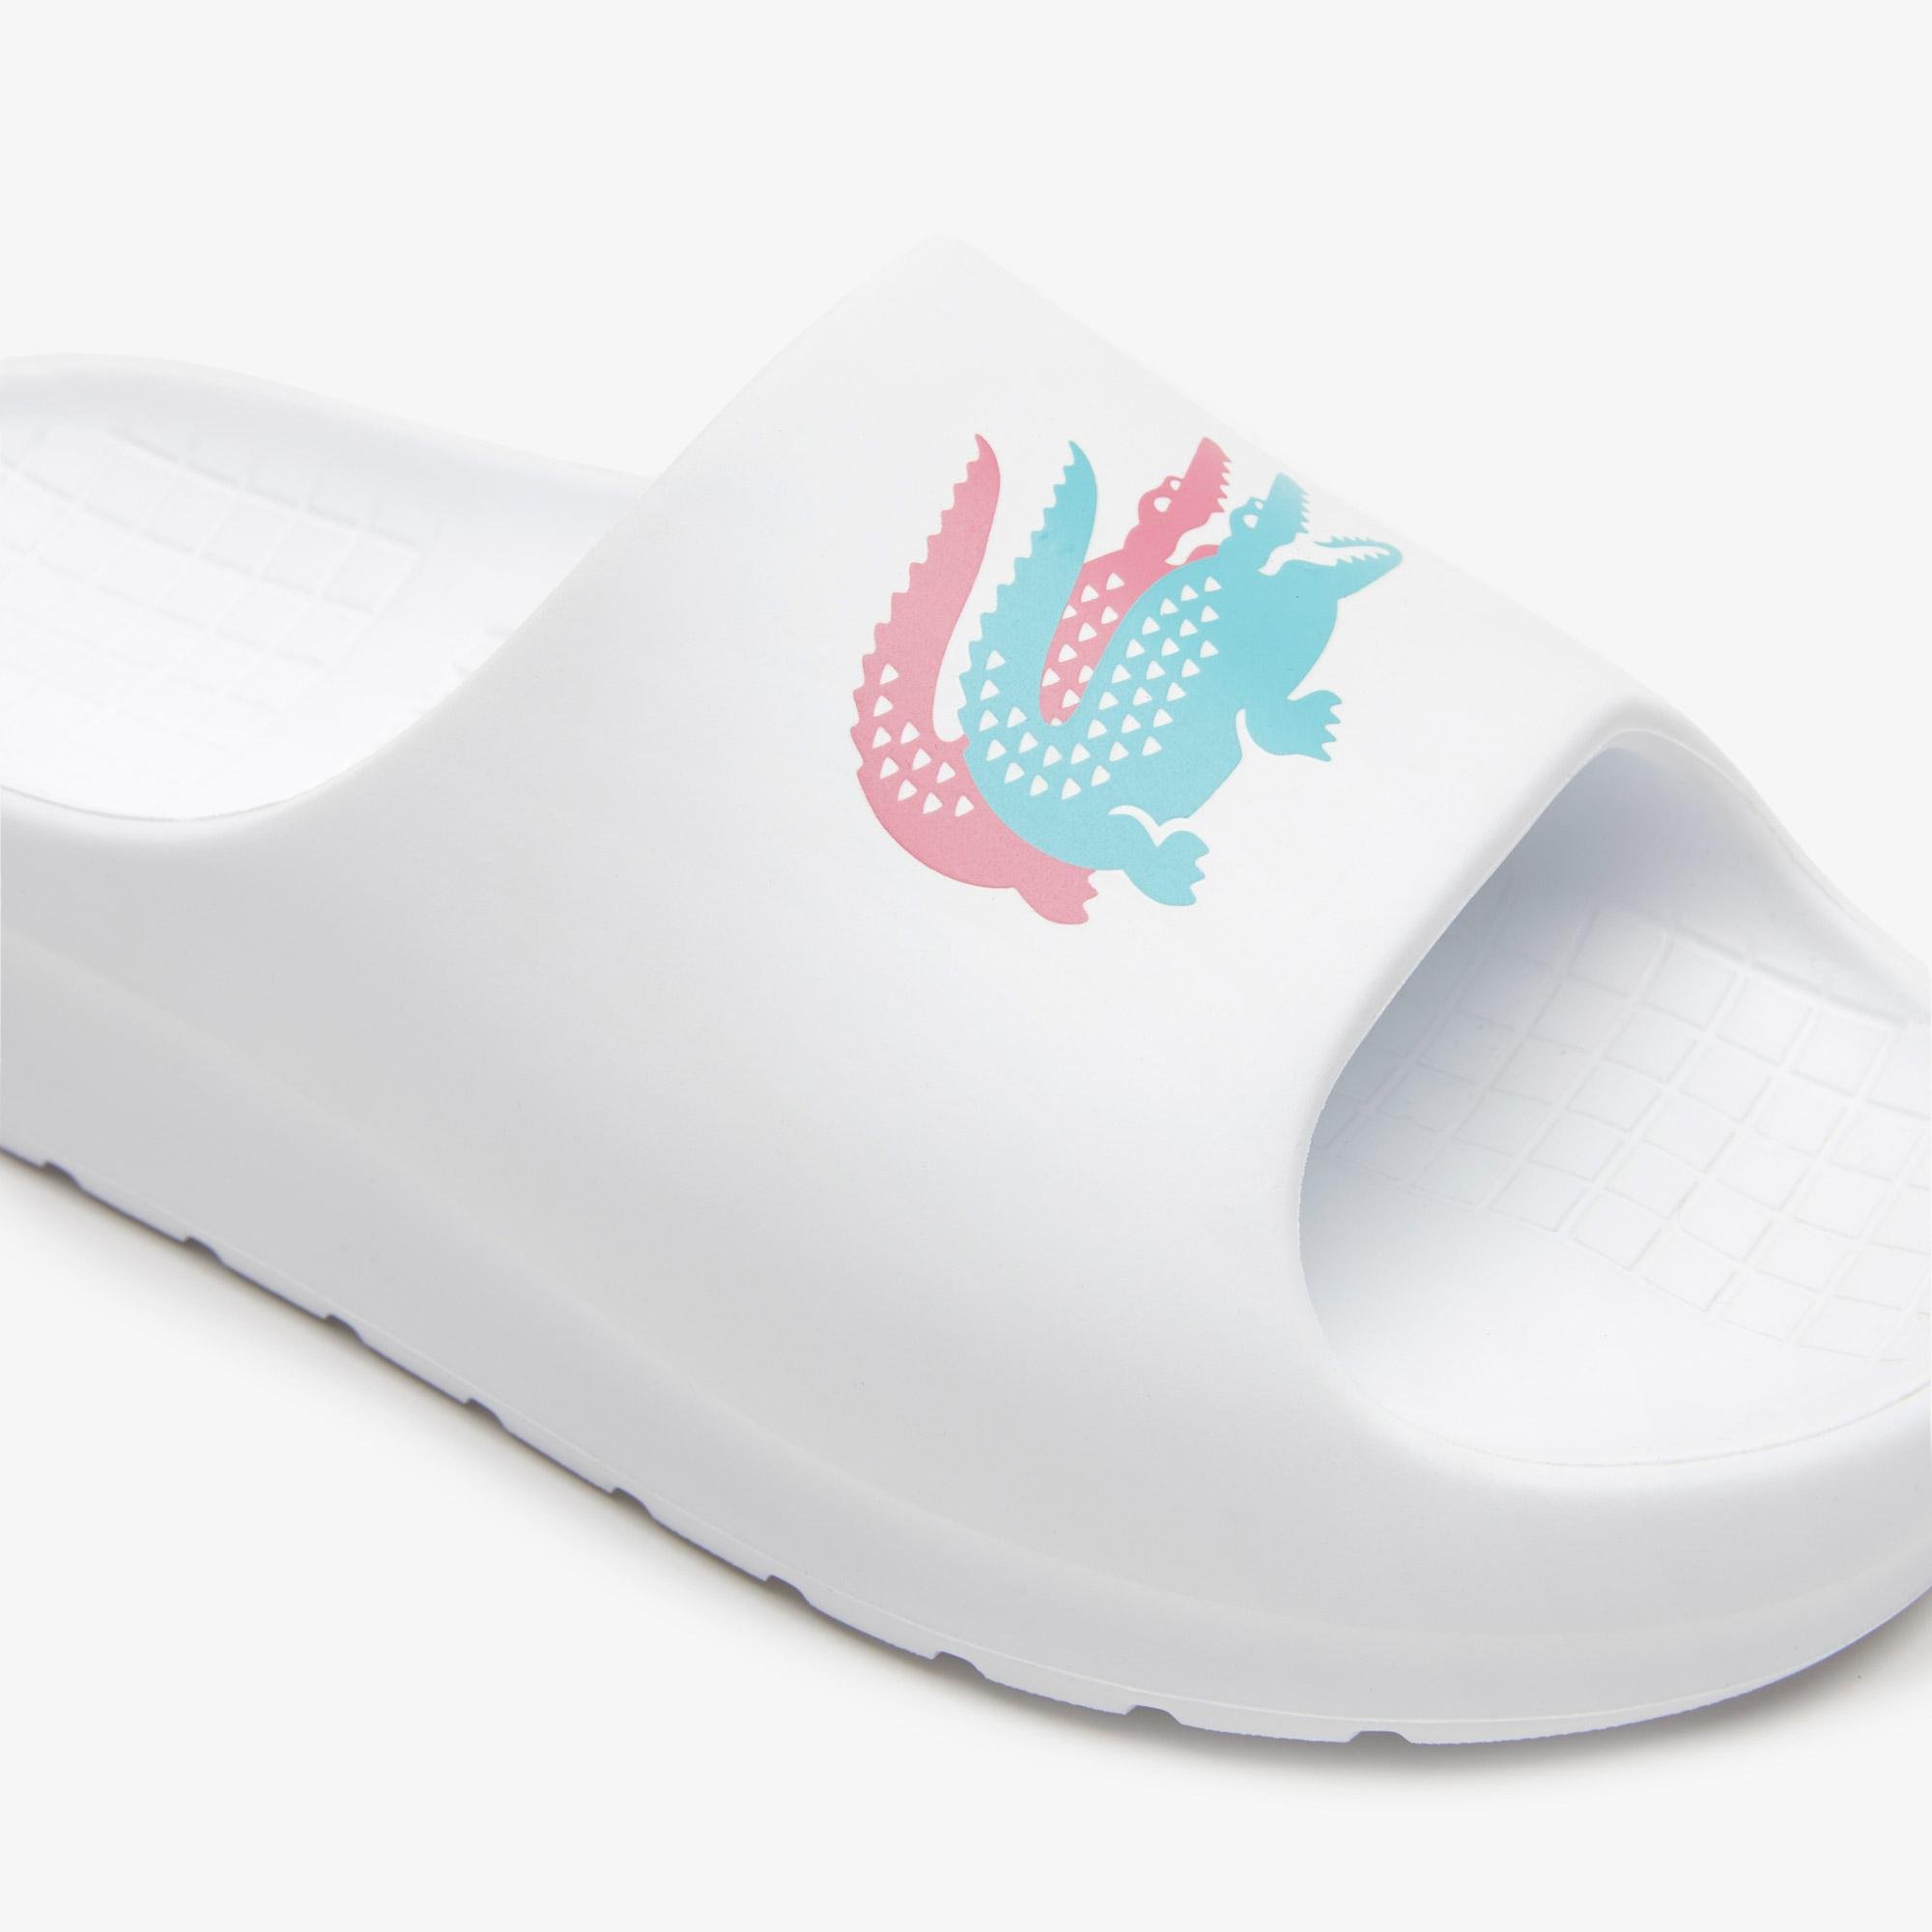 Lacoste Serve Slide 2.0 női fehér papucs